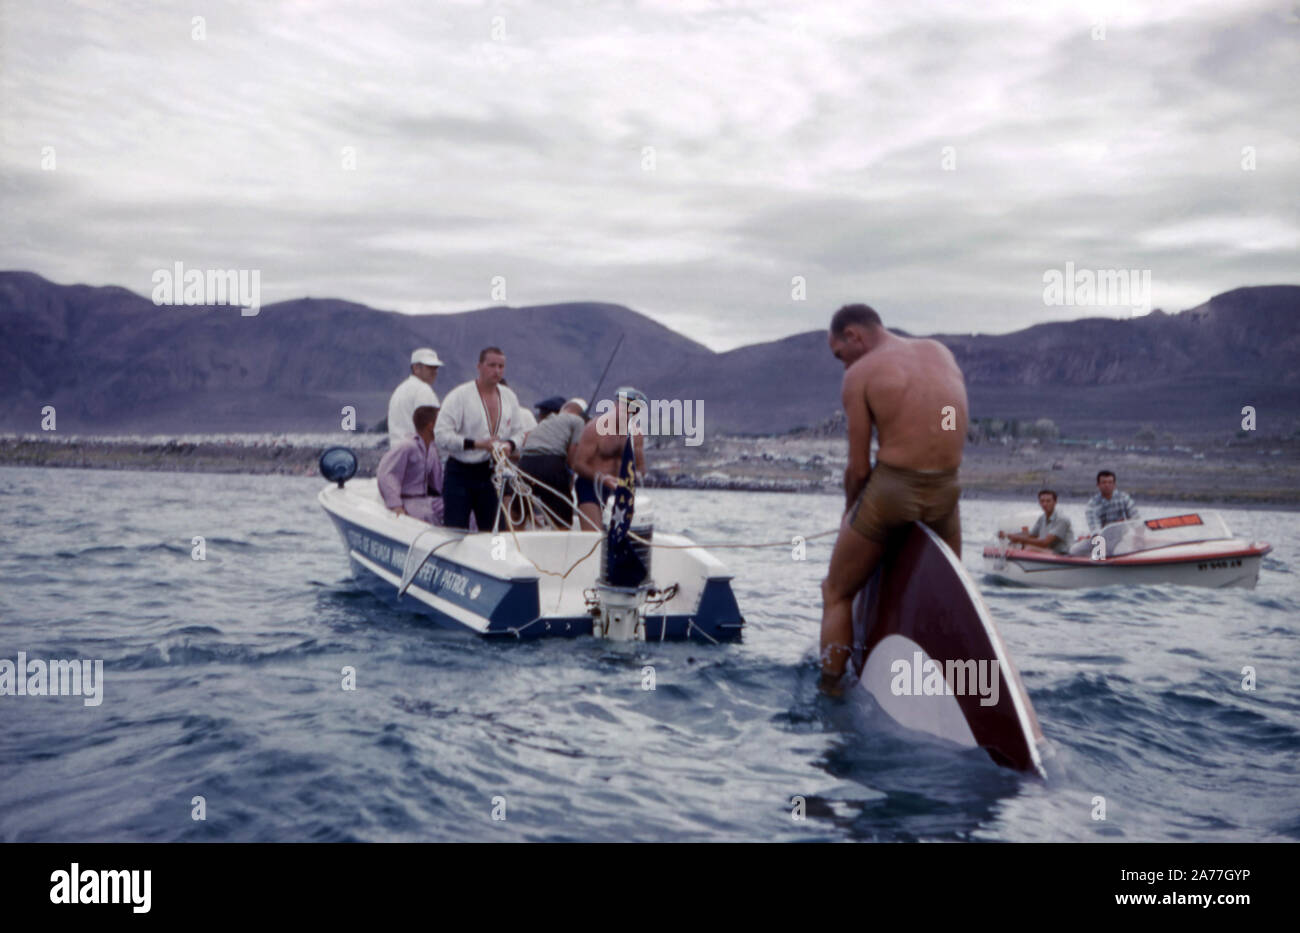 Le lac Pyramid, NV - AOÛT, 1961 : vue générale en tant que groupe de personnes aider l'un de la Gold Cup racers hors de l'eau après avoir perdu au cours de la Gold Cup, course de bateaux à moteur vers Août, 1961 dans le lac Pyramid, Nevada. (Photo de Hy Peskin) Banque D'Images